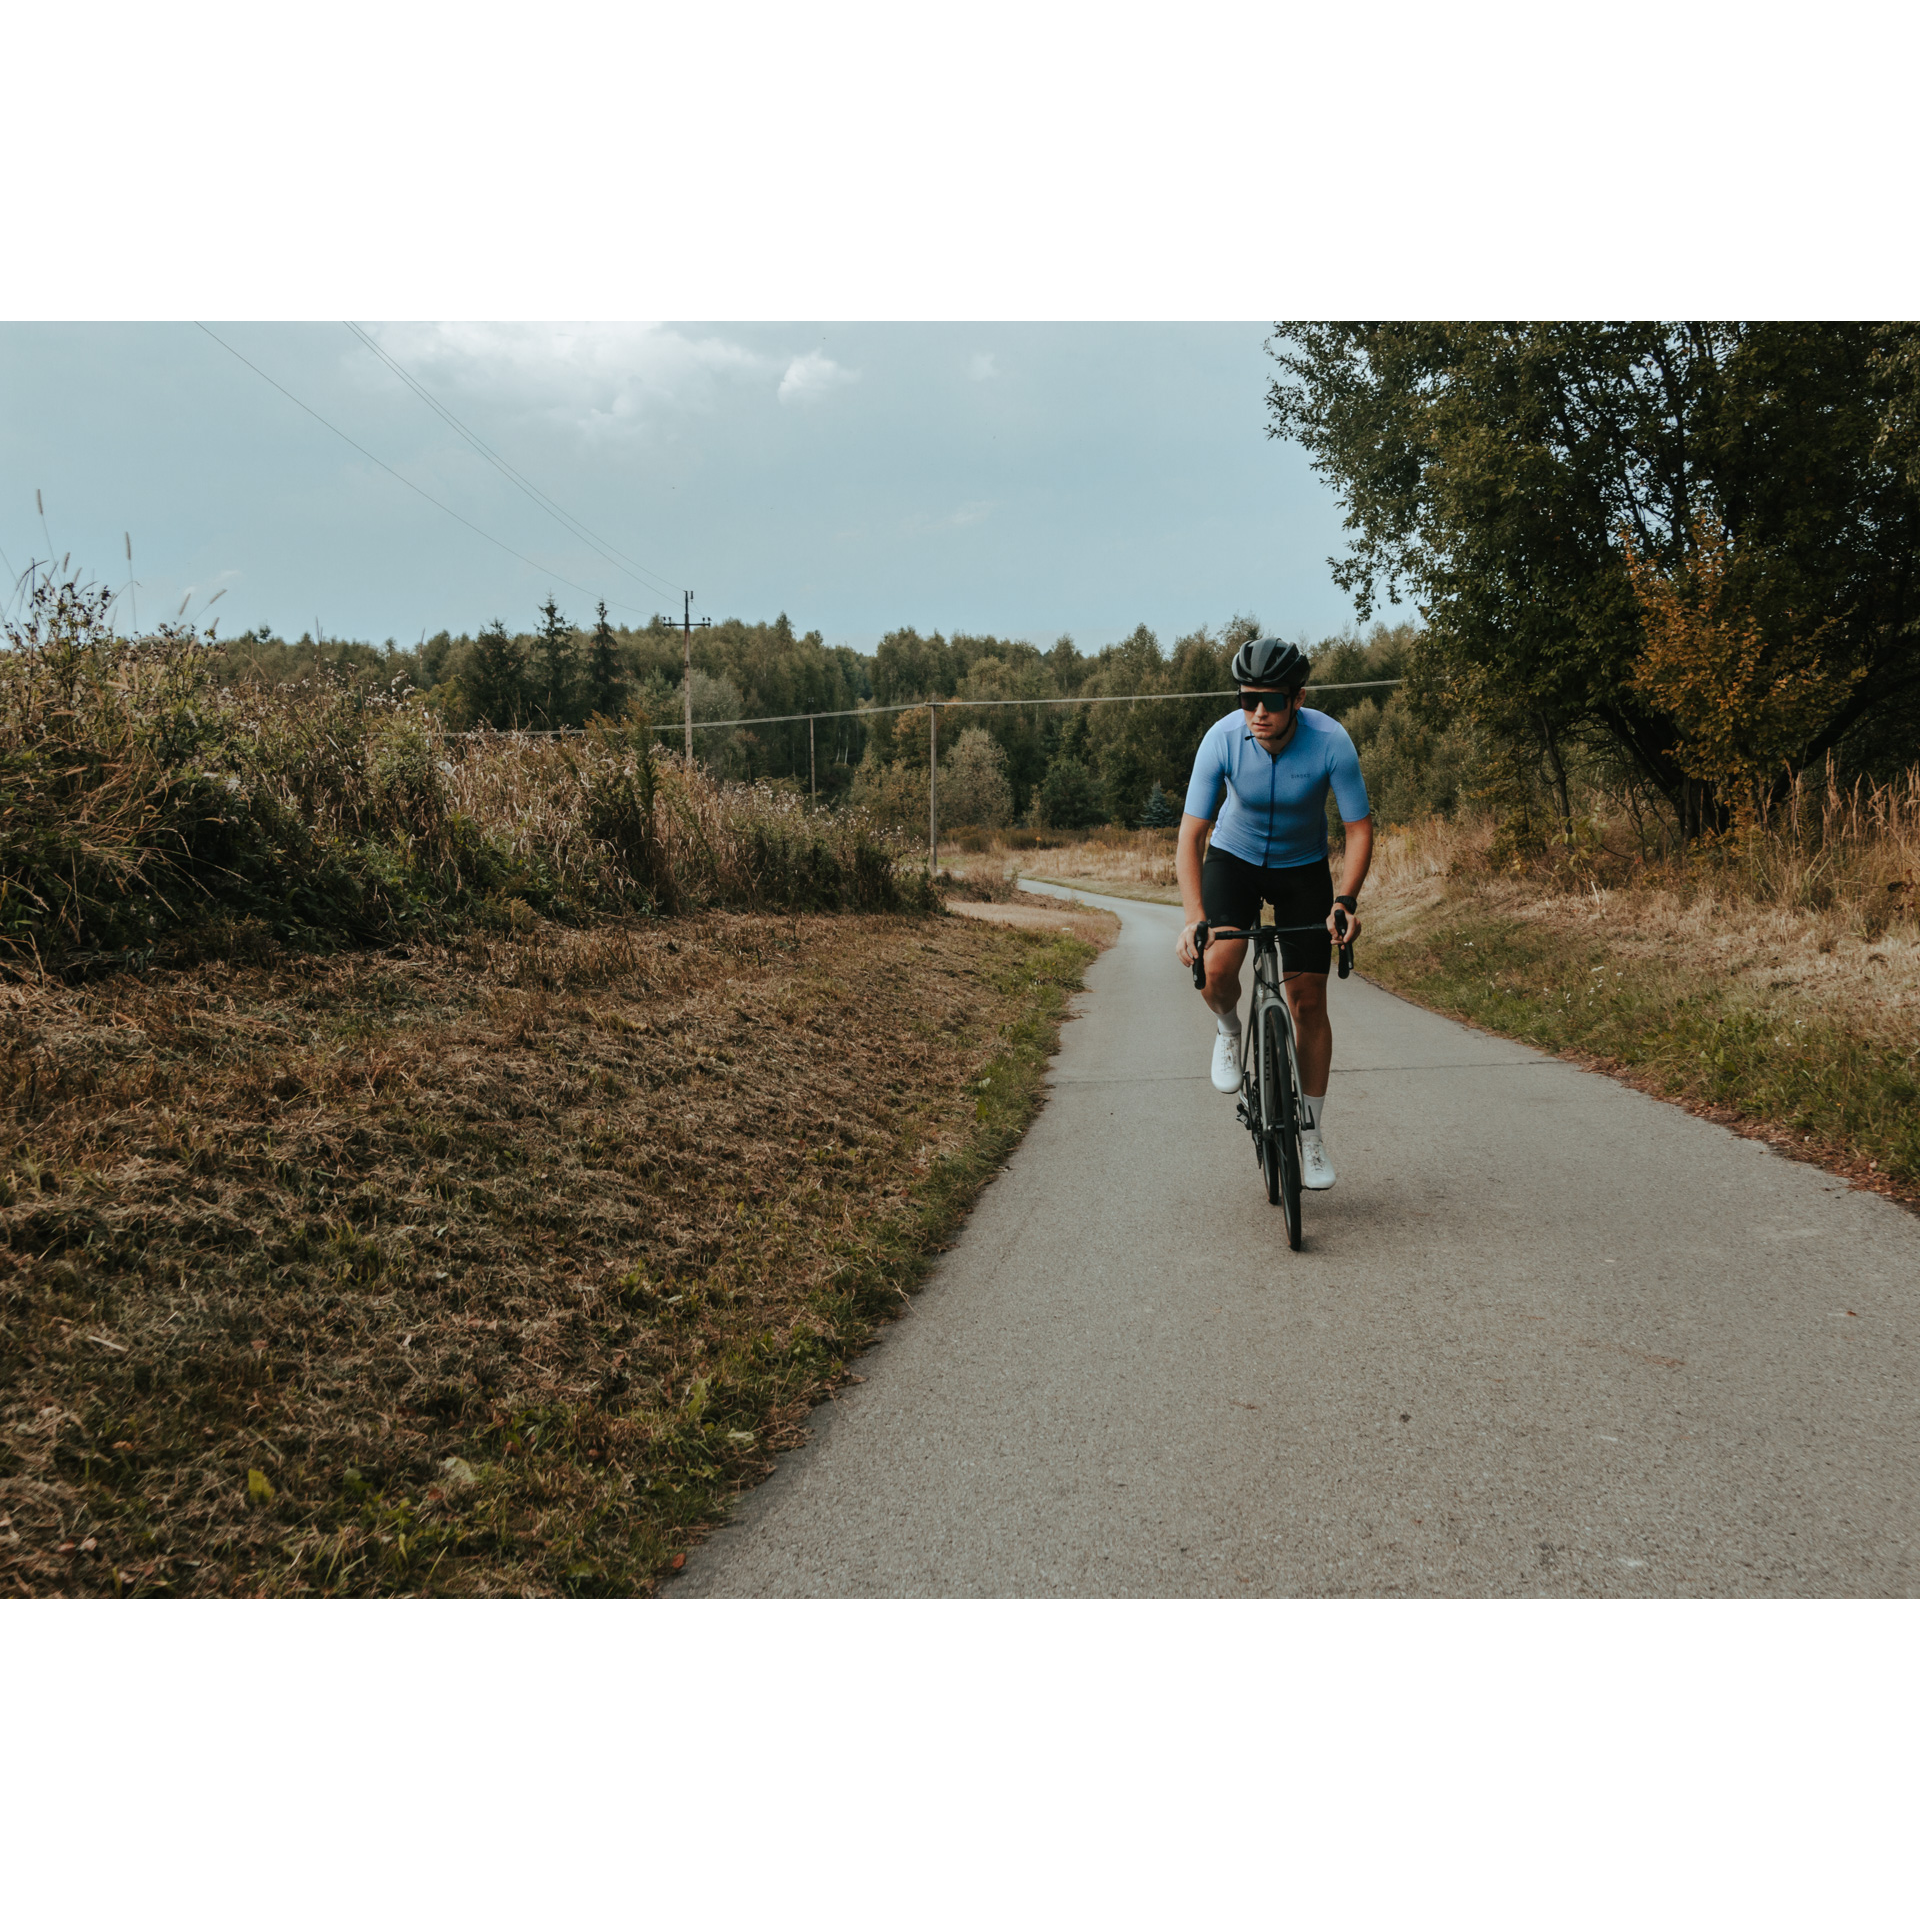 Rowerzysta w niebiesko-czarnym stroju kolarskim, kasku i okularach jadący rowerem asfaltową od strony lasu wśród krzewów i drzew